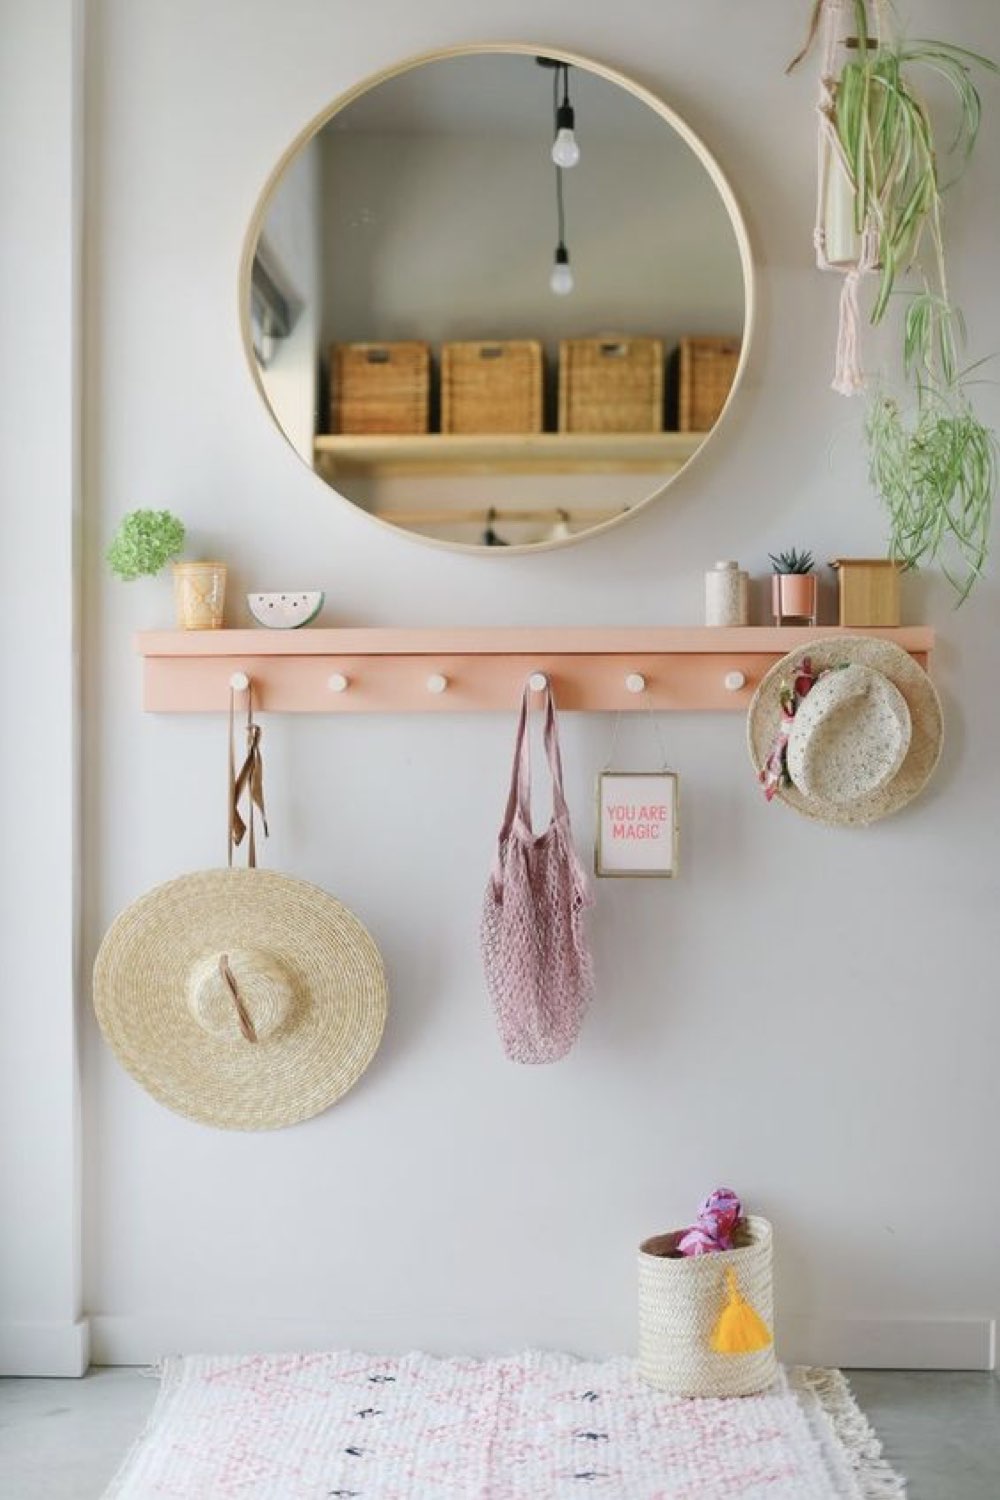 idee deco entree moderne exemple patère murale DIY en bois à peindre couleur corail rose pastel simple et facile miroir rond ambiance jeune premier appartement